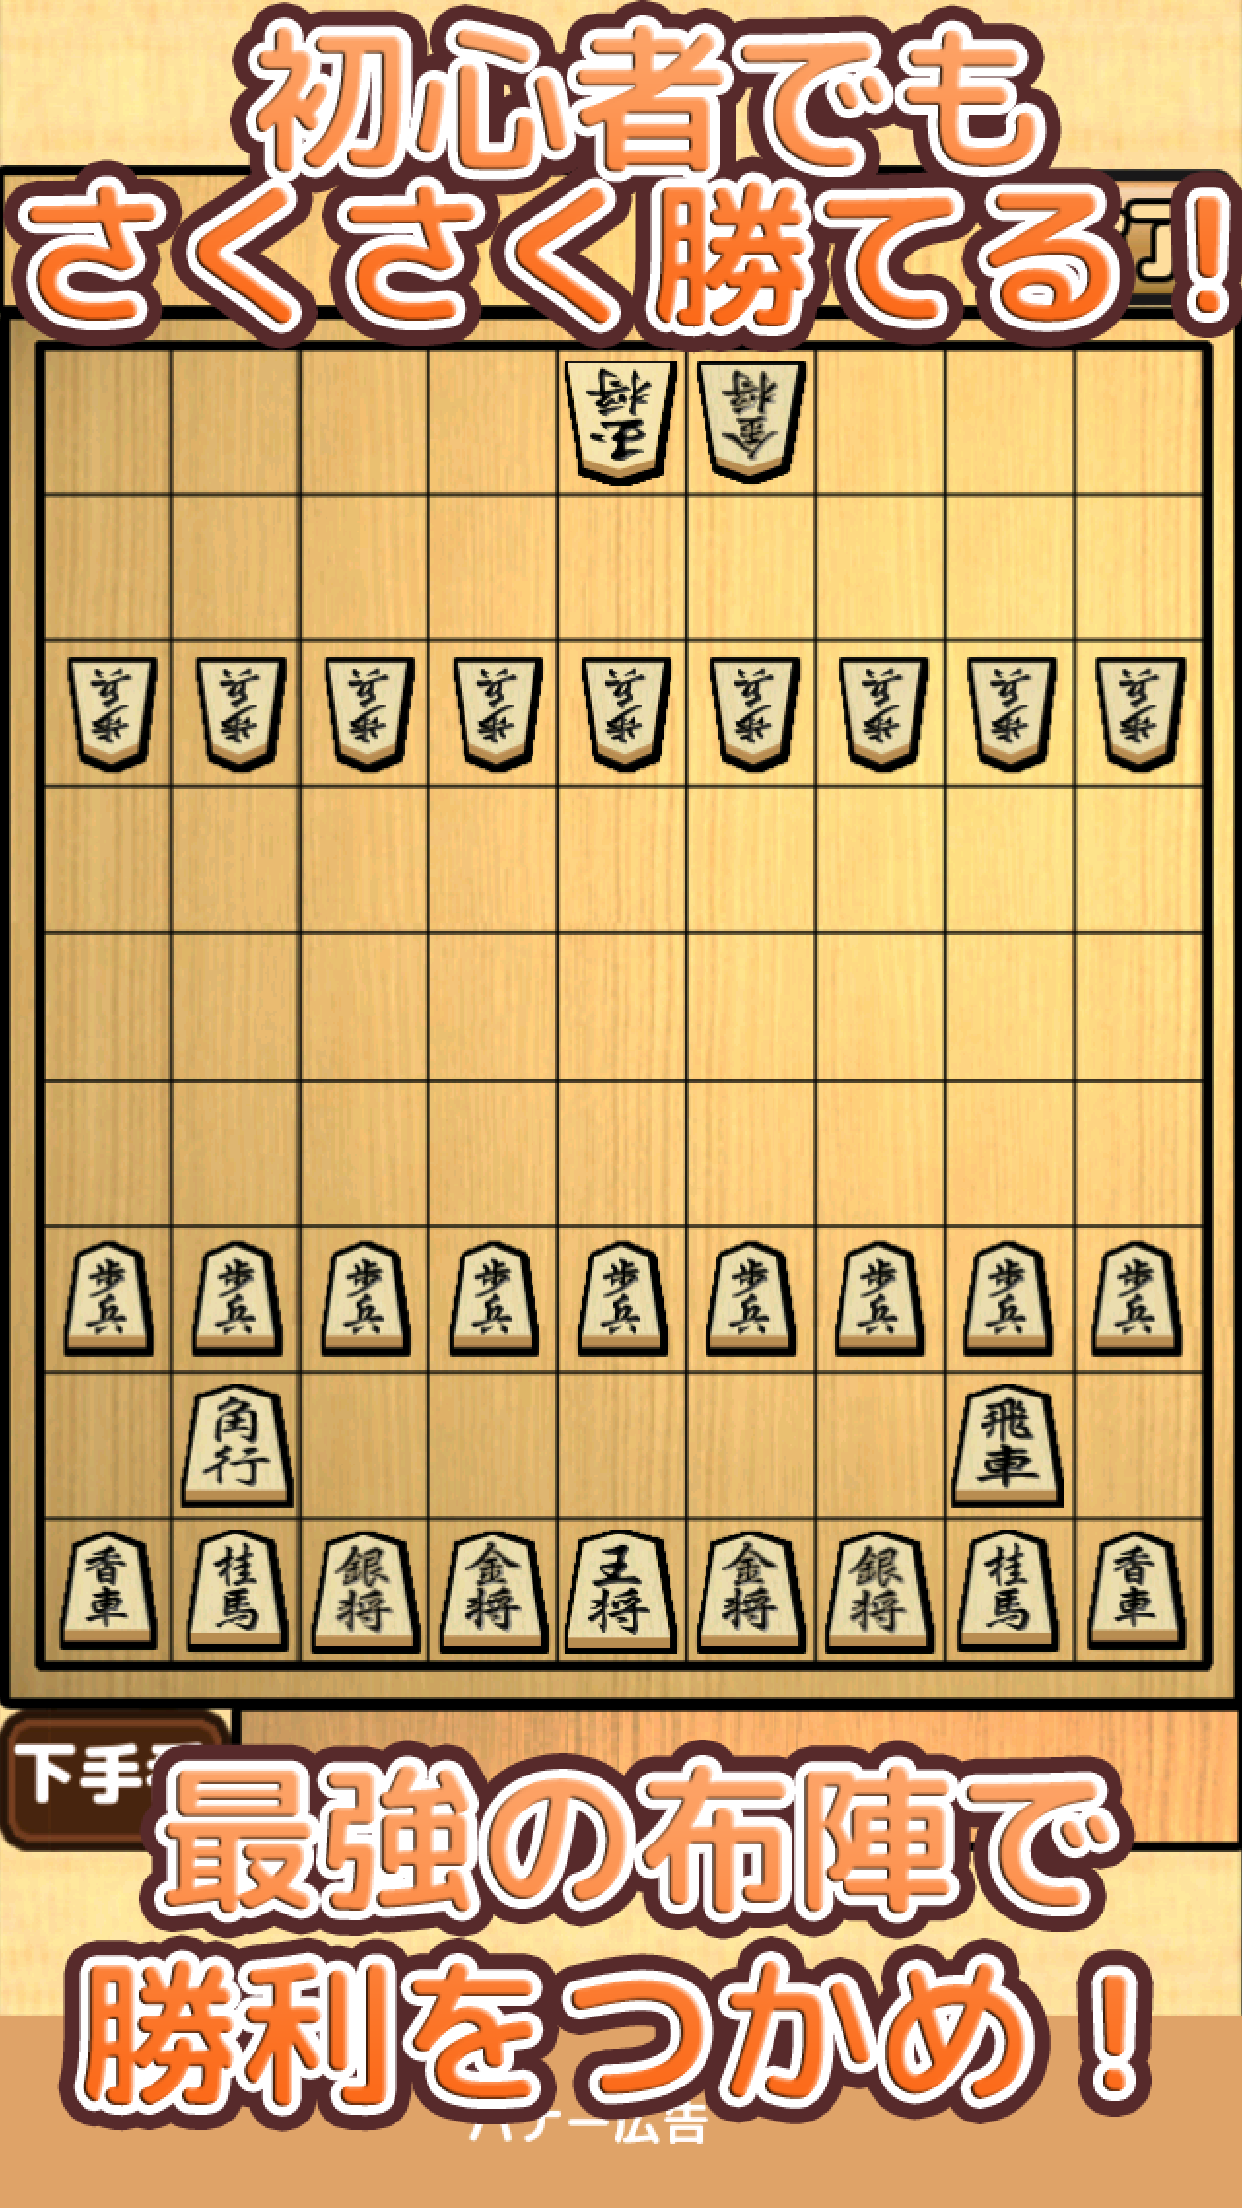 Screenshot 1 of ការណែនាំអំពី Shogi - ល្បែង Shogi សាមញ្ញដែលសូម្បីតែអ្នកចាប់ផ្តើមដំបូងក៏អាចឈ្នះបានយ៉ាងងាយស្រួល 0.1.6